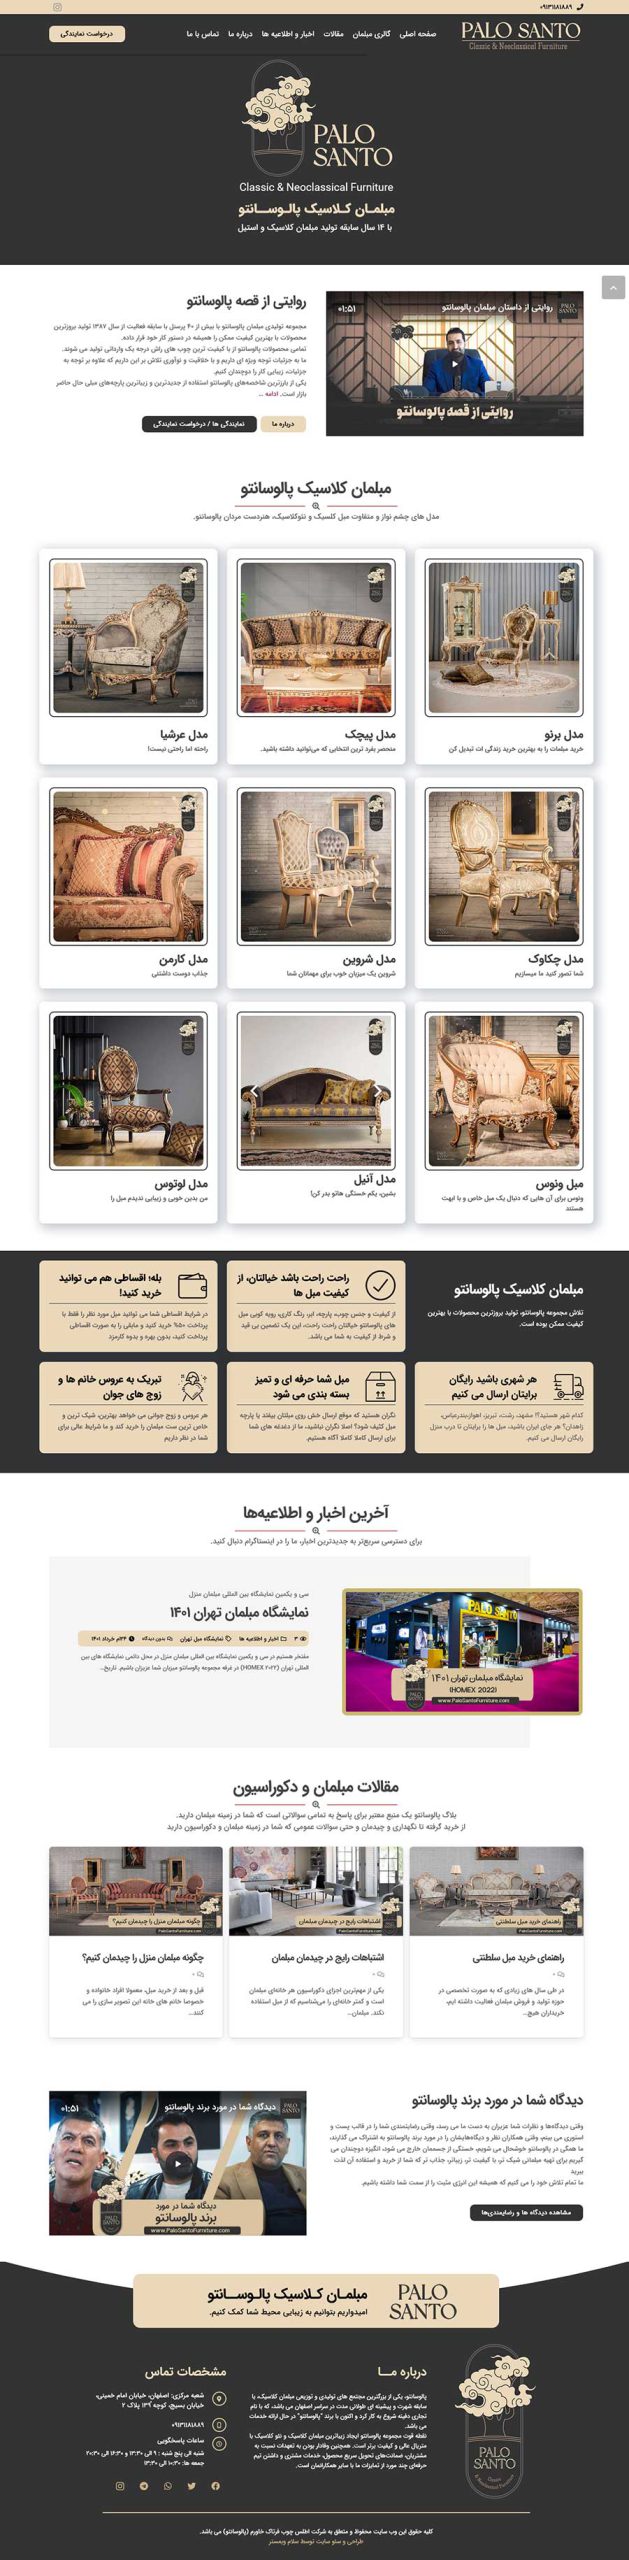 طراحی سایت مبل پالو سانتو در اصفهان